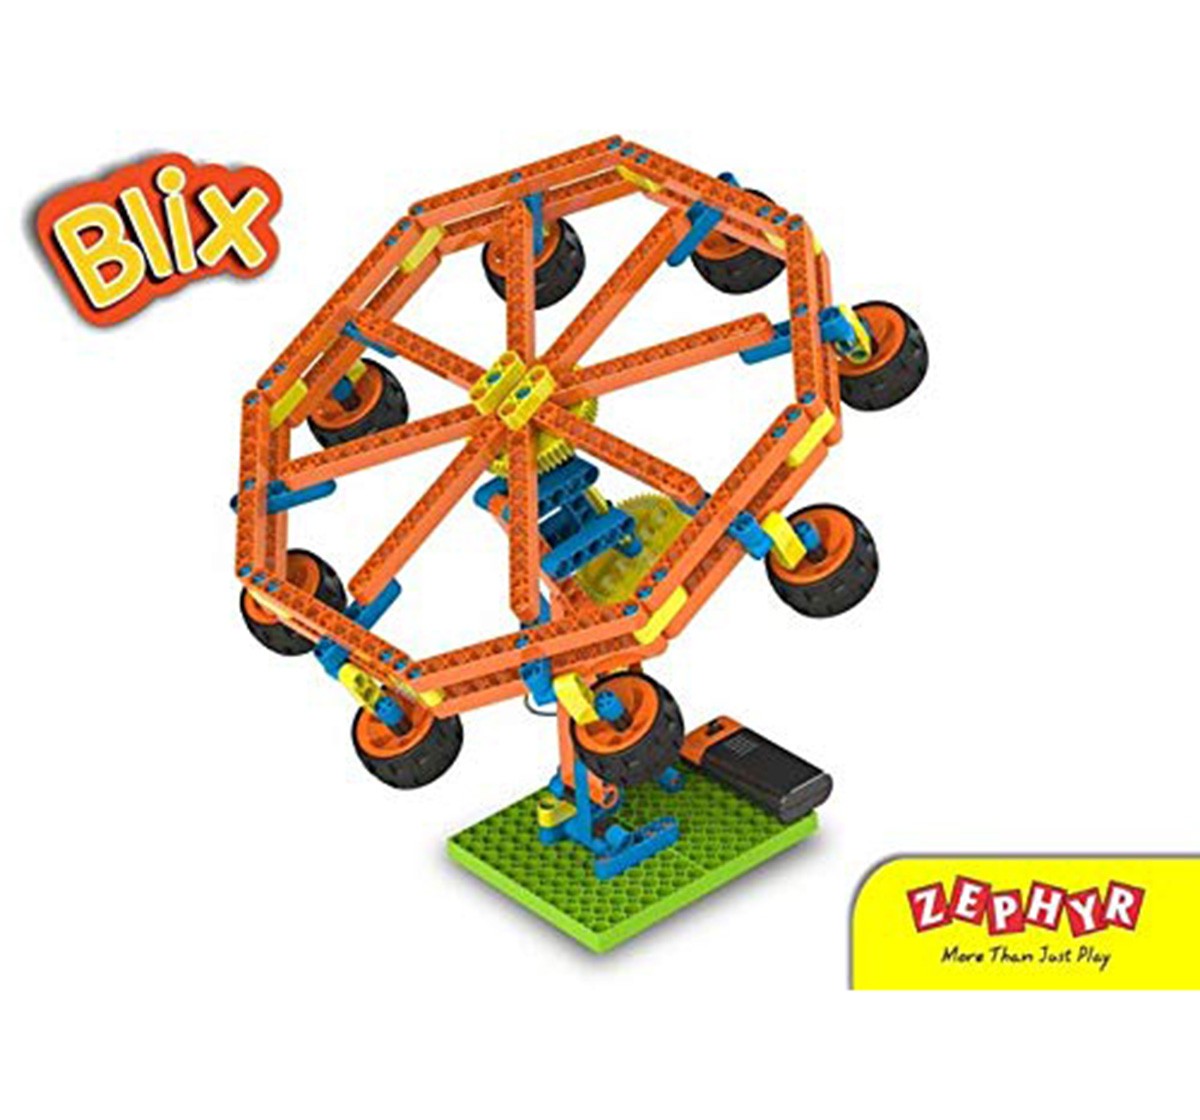 Blix Amusement Park